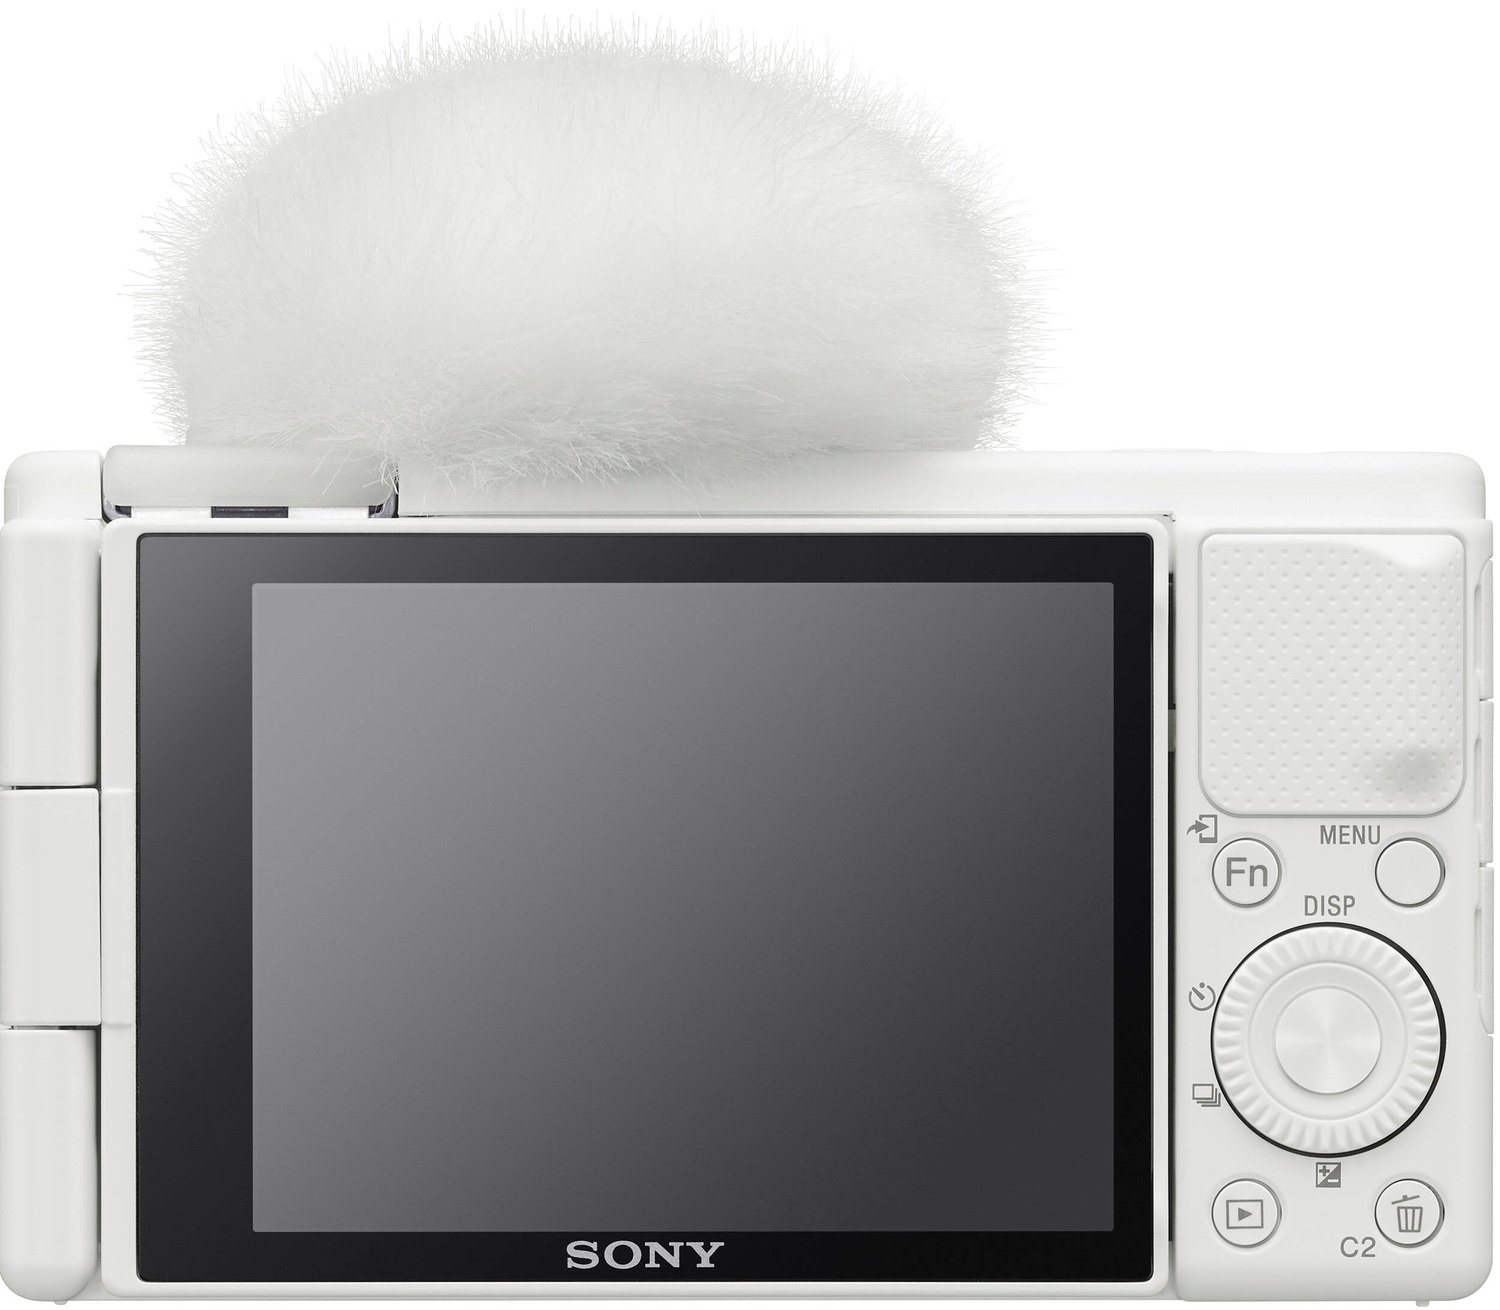 Фотоаппарат Sony ZV-1 White